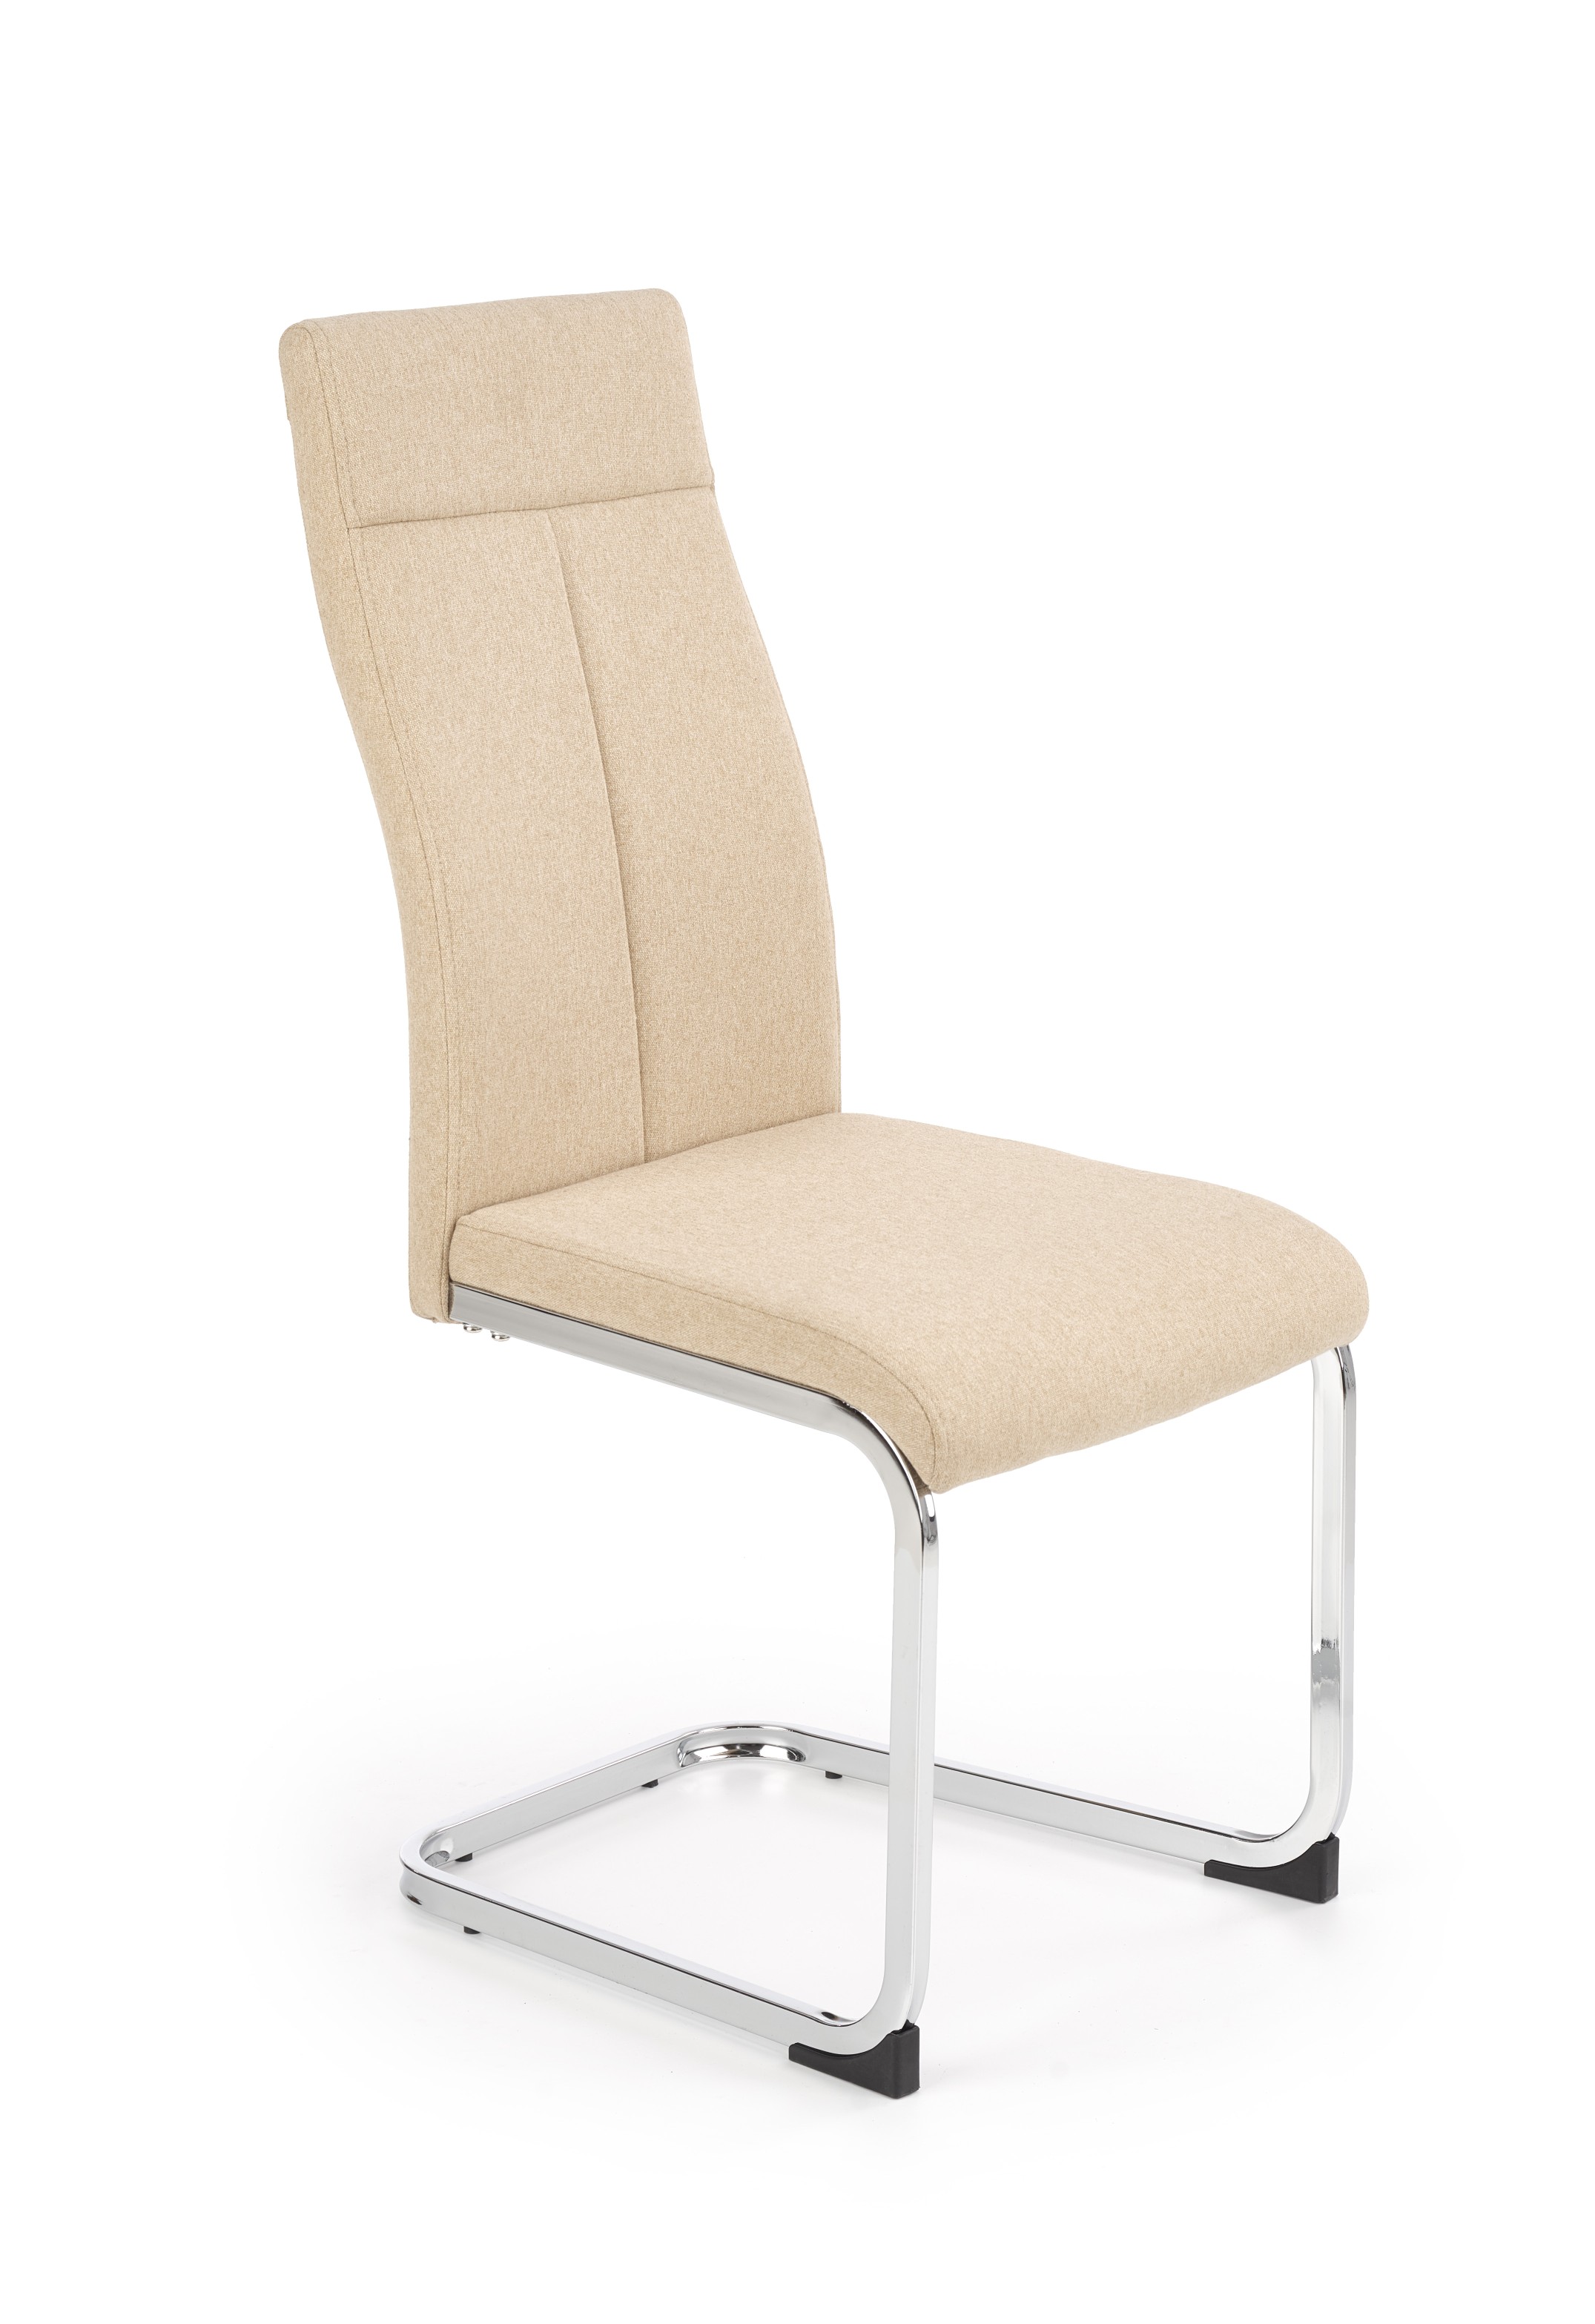 K370 krzesło beżowy